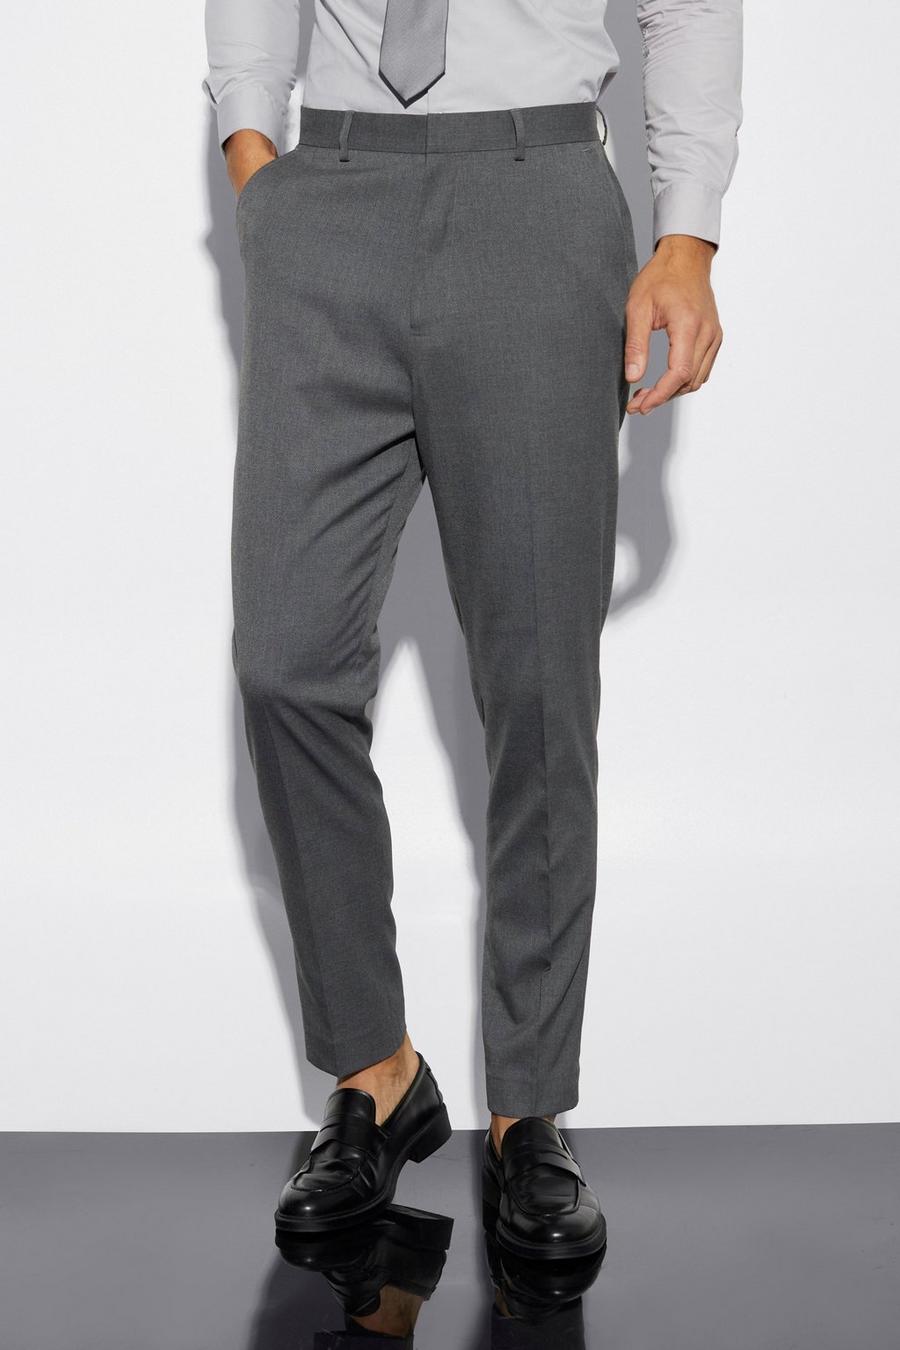 Pantalón Tall elegante estrecho, Grey grigio